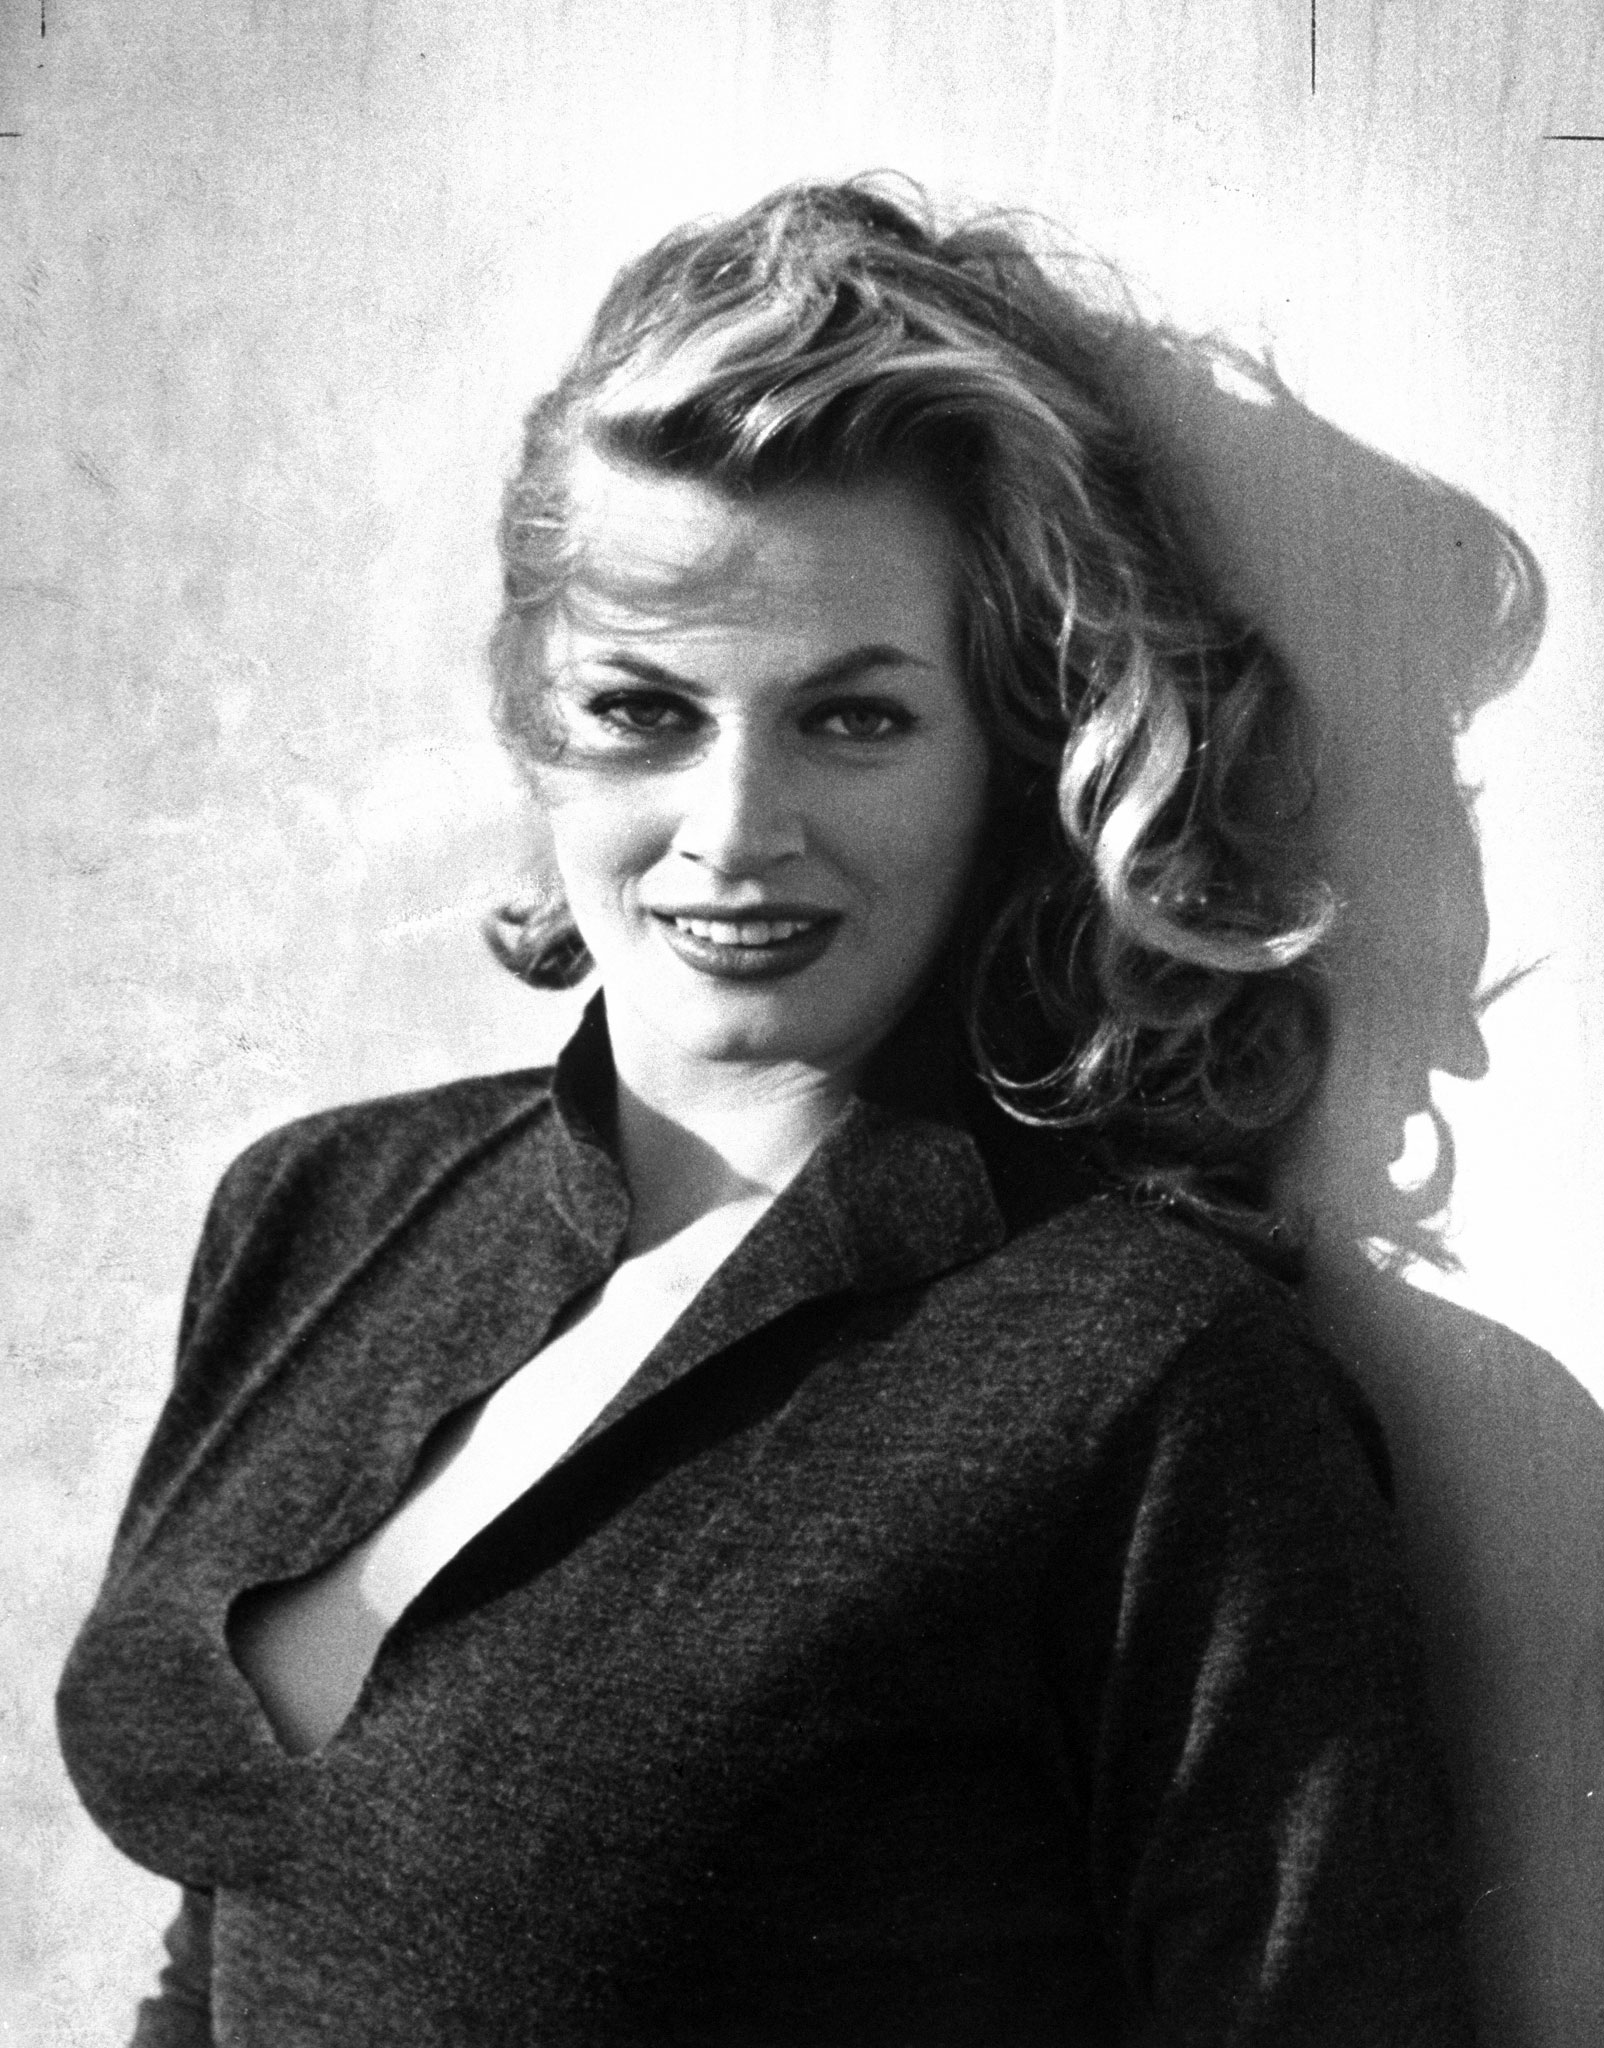 Anita Ekberg in 1951